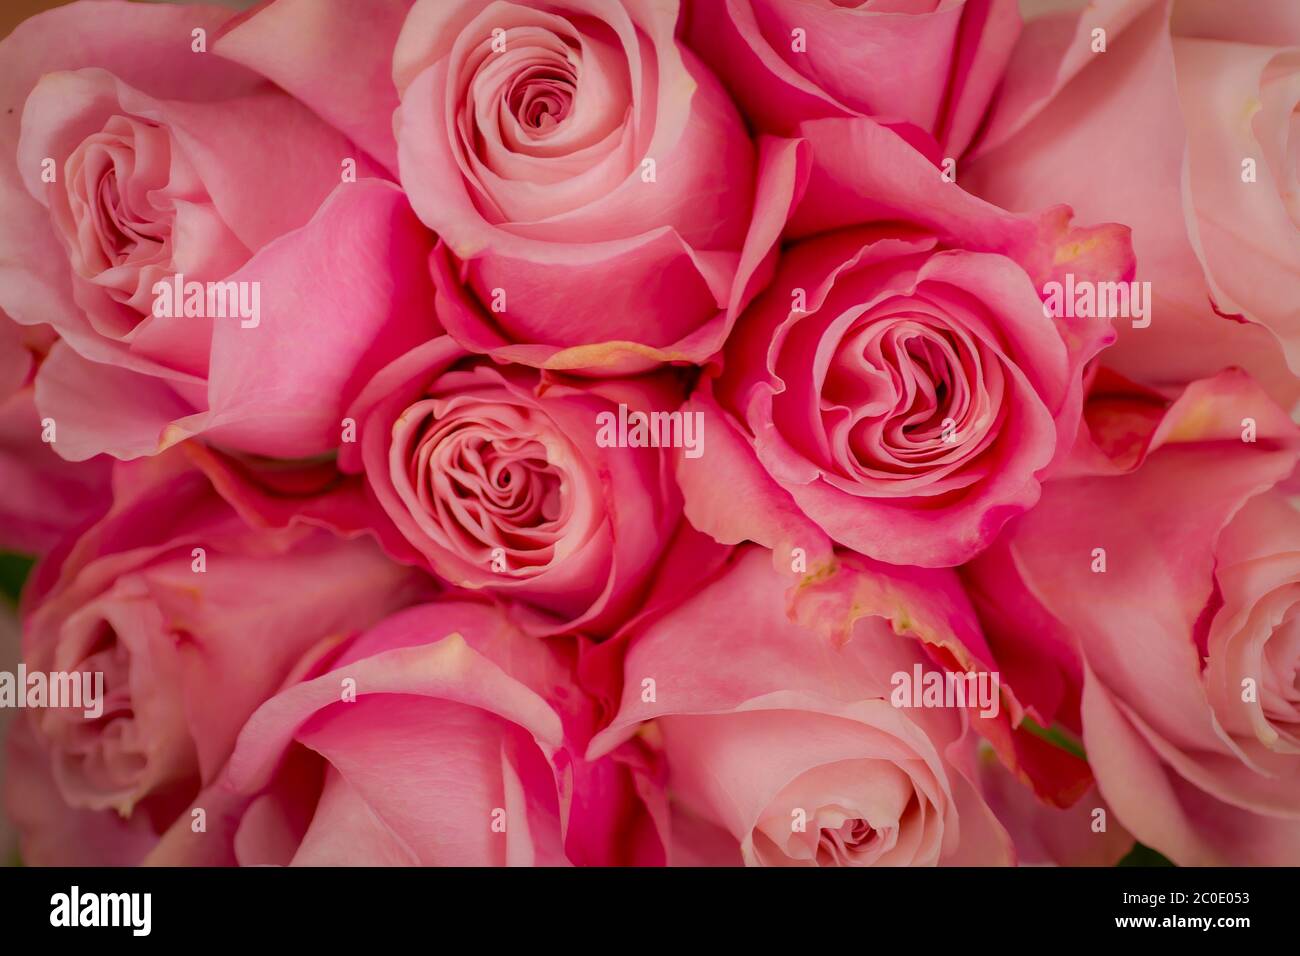 Frauen Hand hält einen Strauß Secret Garden Rosen Vielfalt, Studio erschossen, rosa Blumen Stockfoto